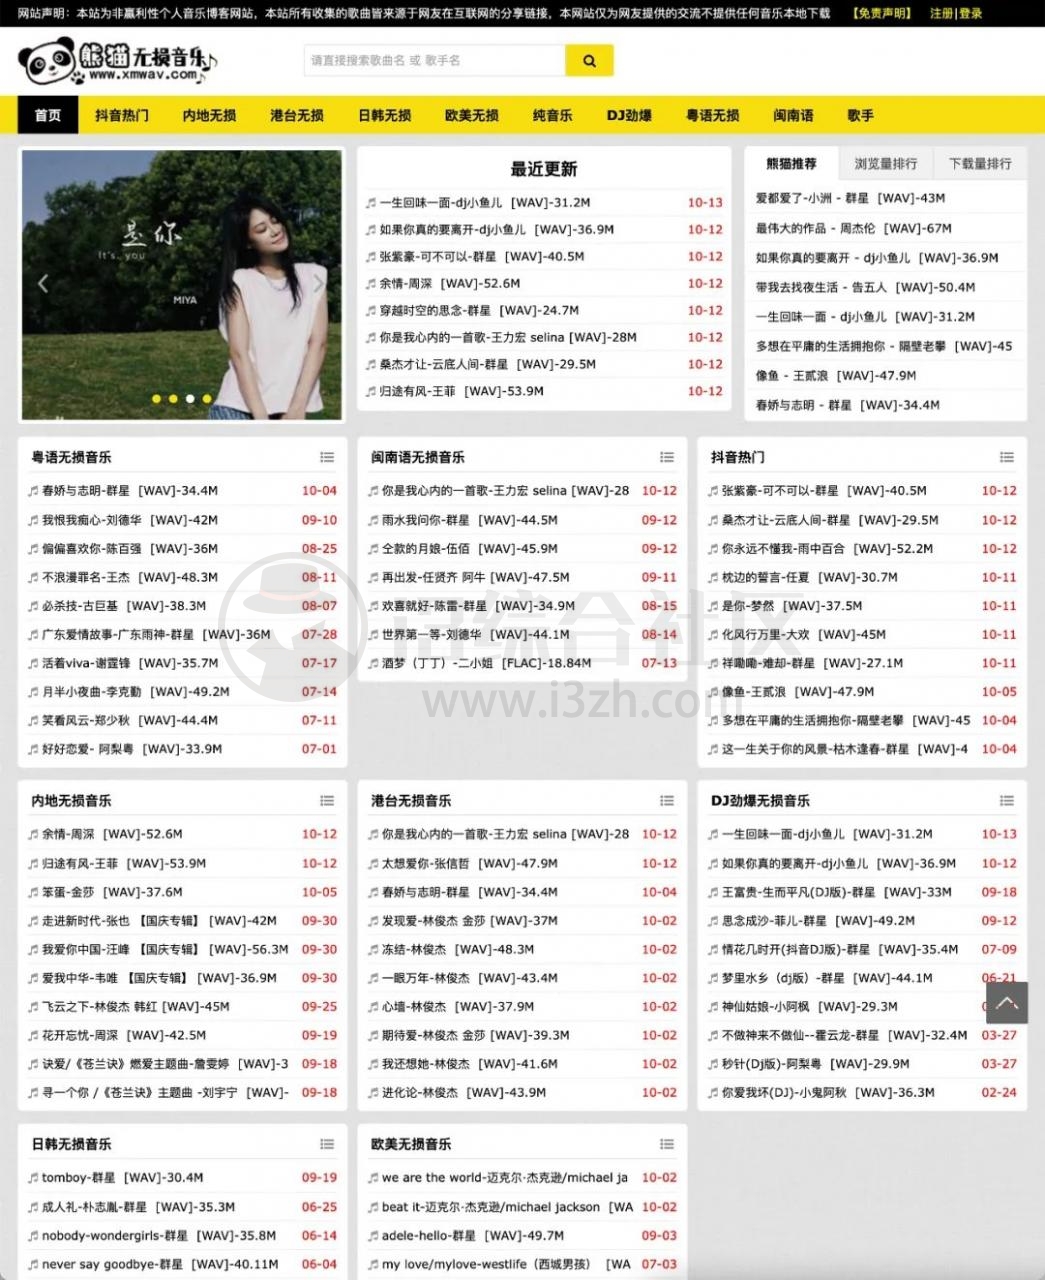 熊猫无损音乐(xmwav.com)，一个非赢利性个人音乐博客网站！